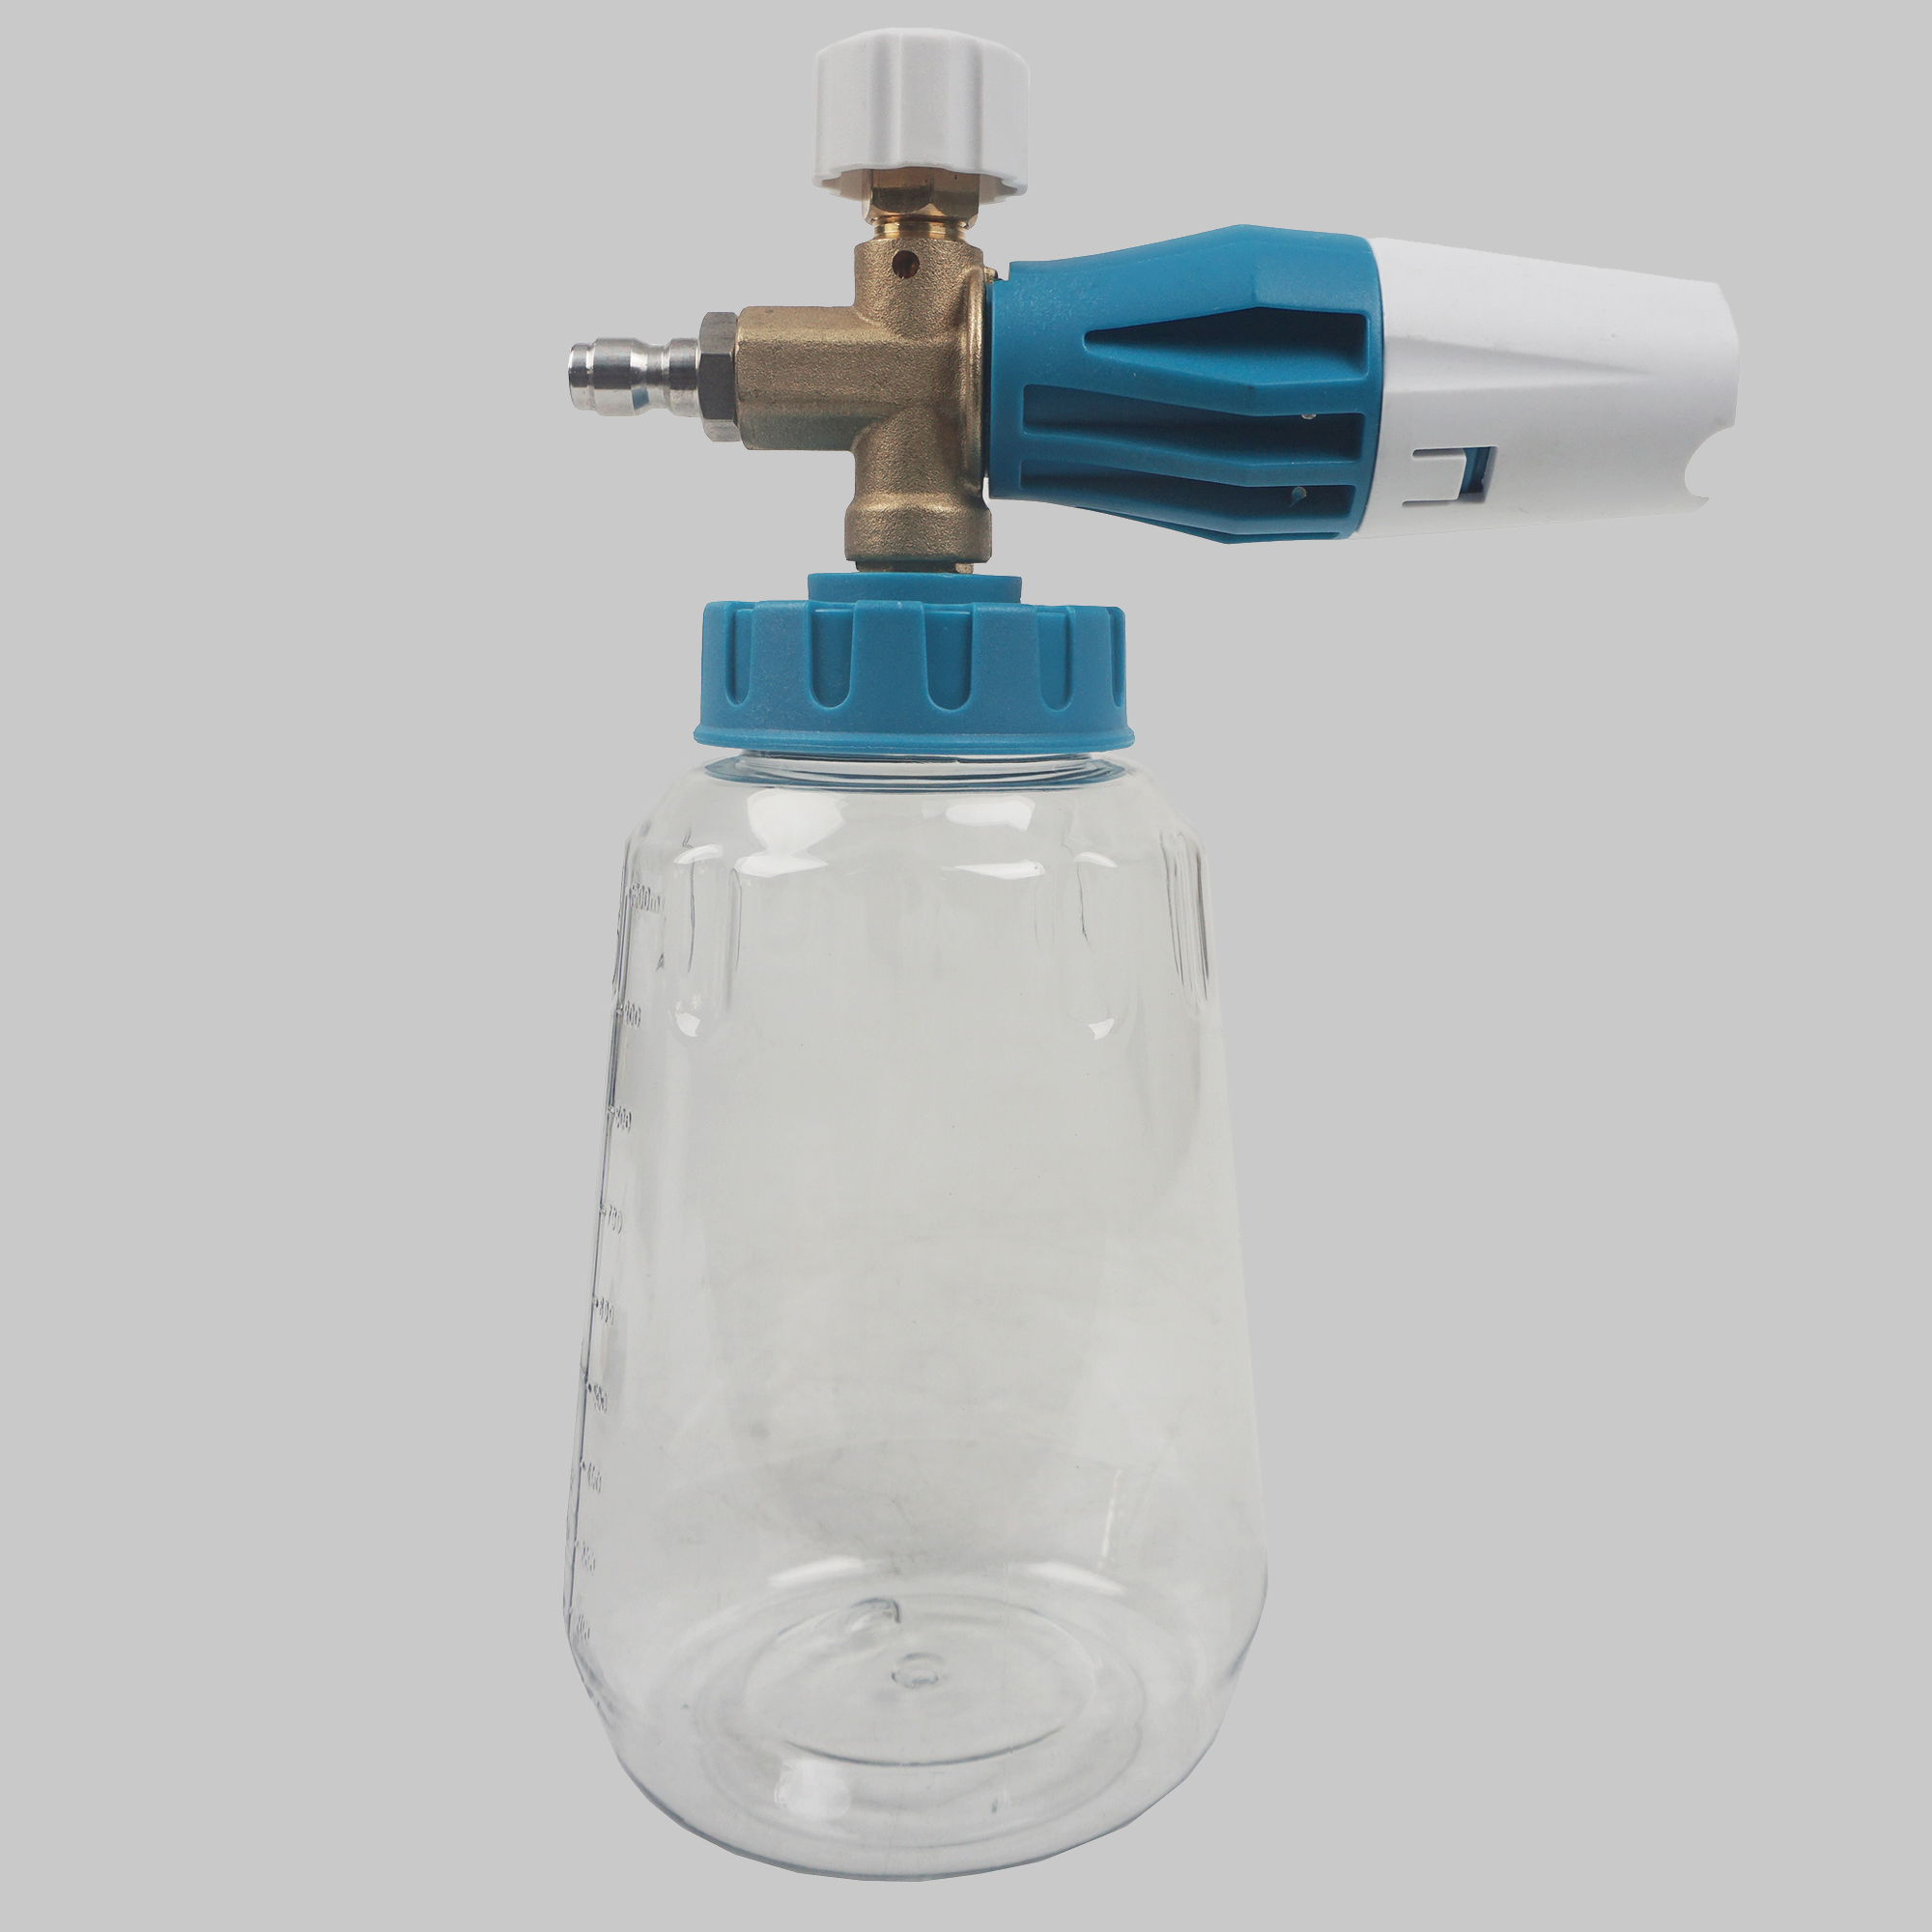 Hochdruck Wasser Luxzenschaum Lanze Schneeschaum Waschmaschine mit 1/4 '' Nilfisk schneller Stecker